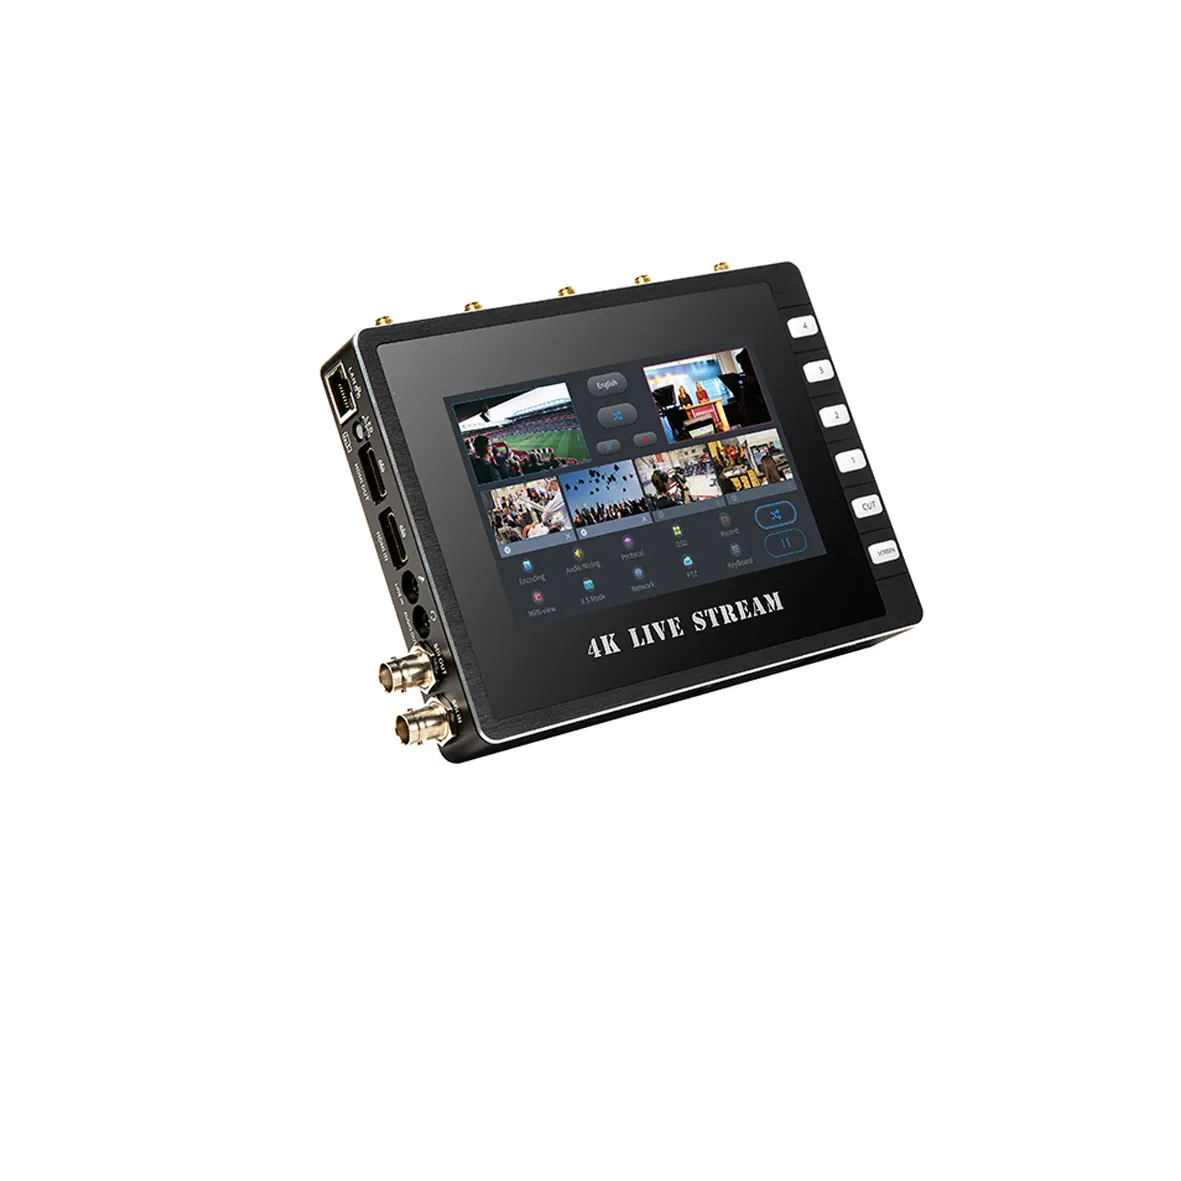 लाइव प्रसारण 4K HDMI के लिए SDI 4G 5G संबंध स्विचर रंज एनकोडर आईपी डिकोडर